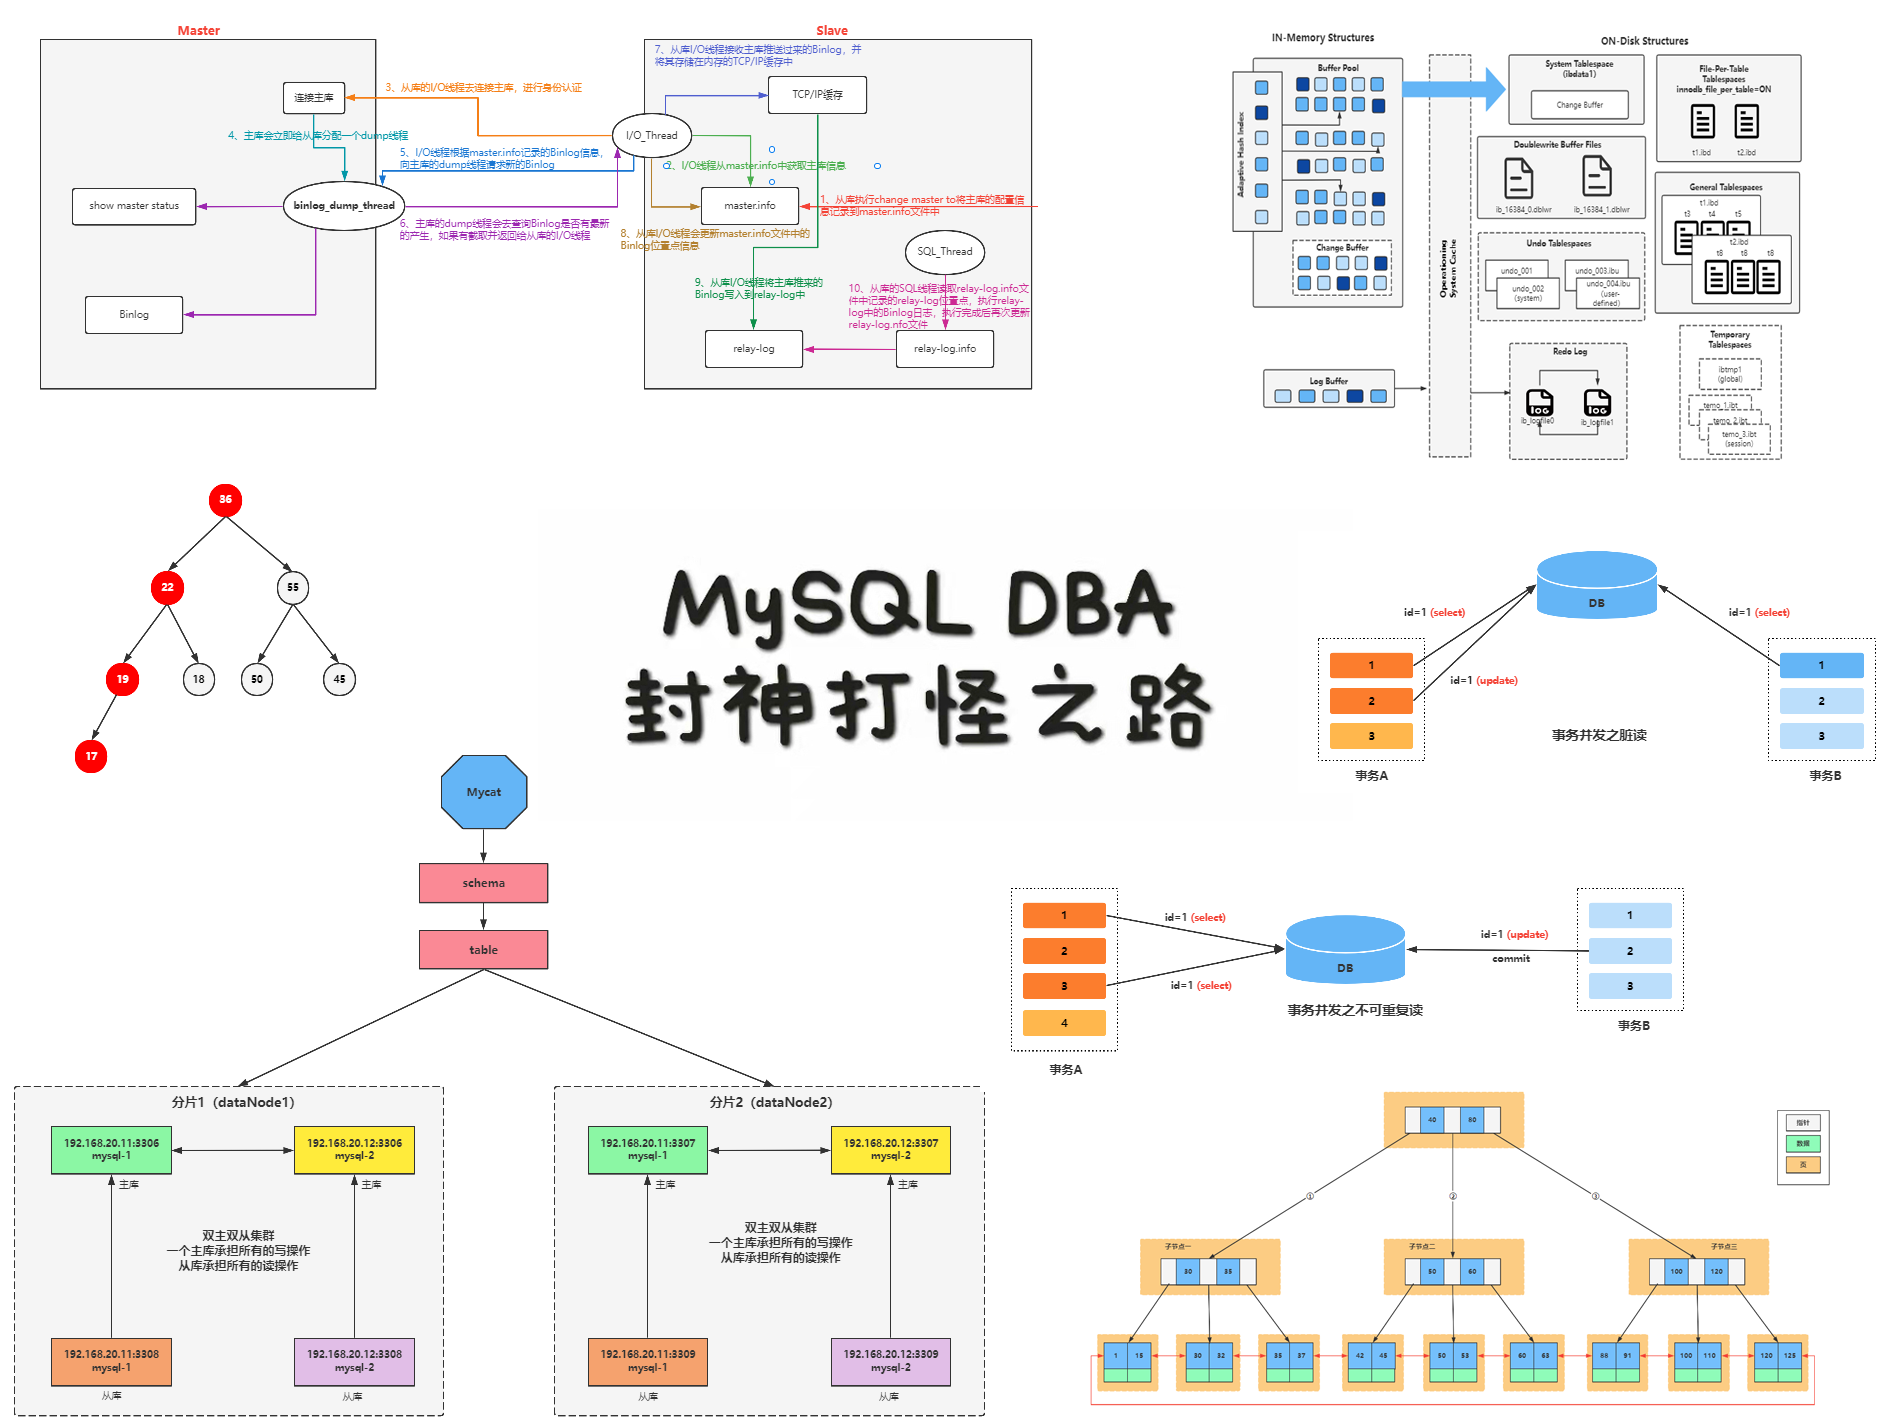 深入理解MySQL事务MVCC的核心概念以及底层原理